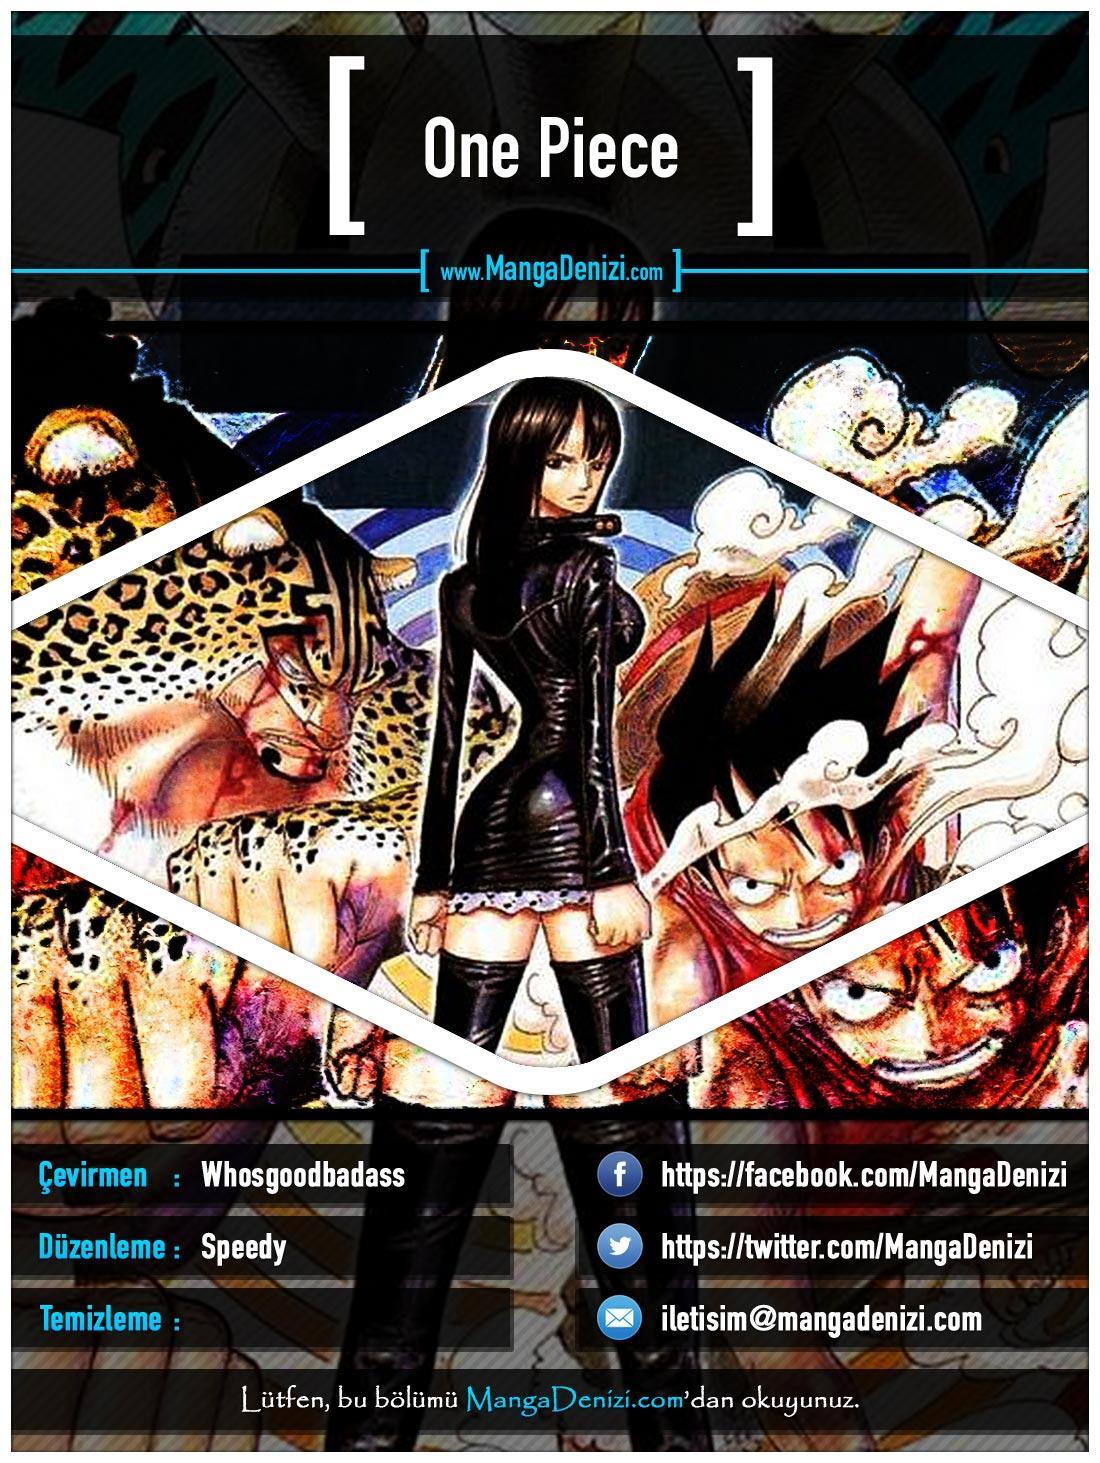 One Piece [Renkli] mangasının 0394 bölümünün 1. sayfasını okuyorsunuz.